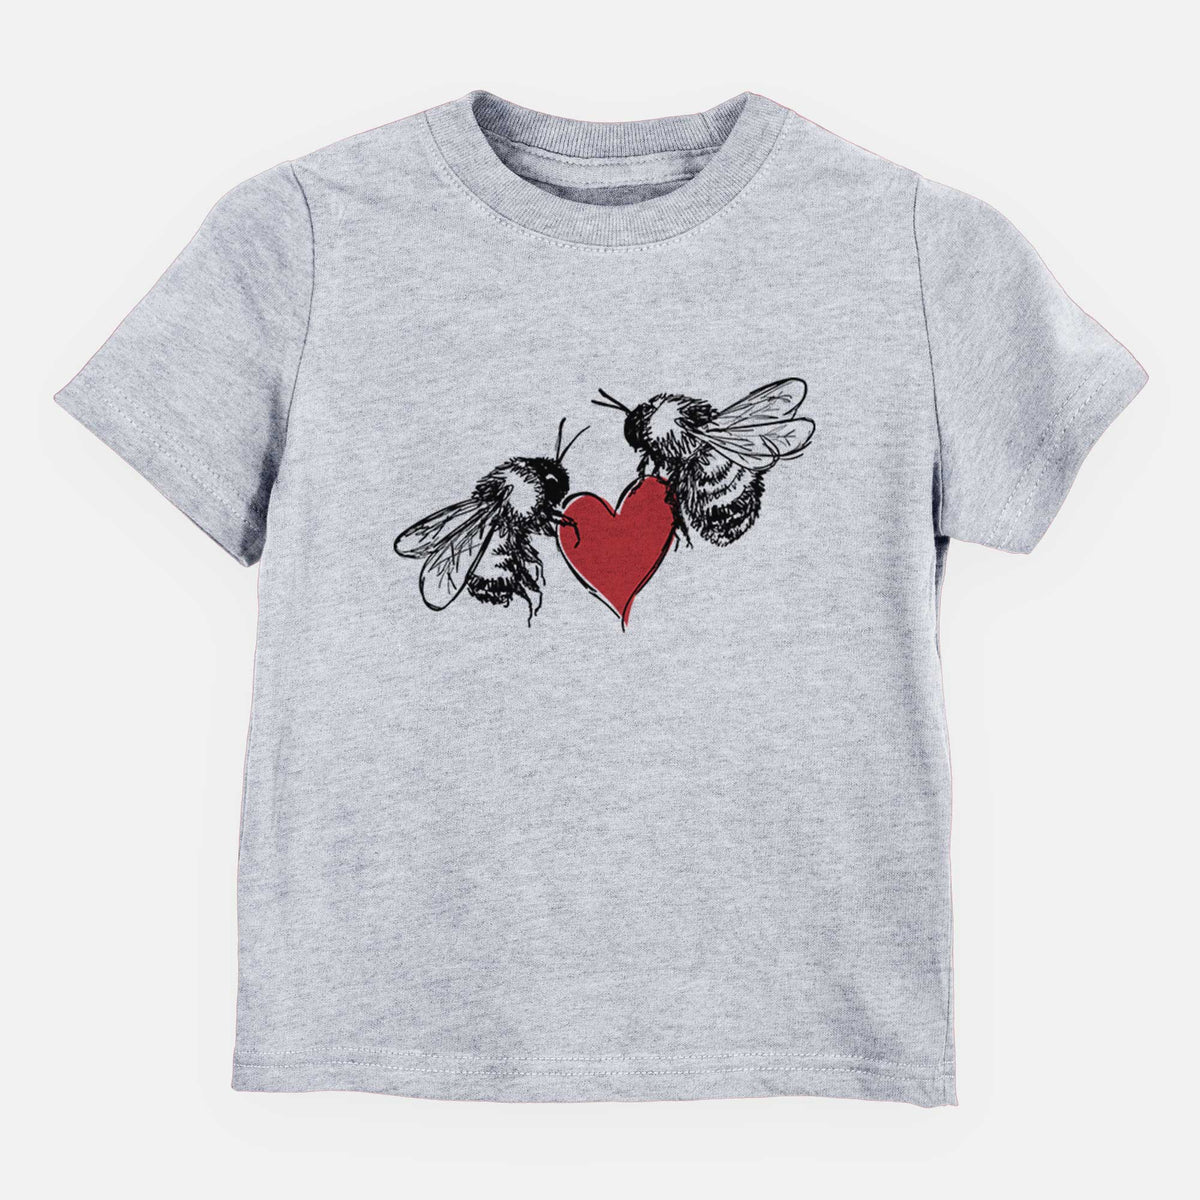 Love Bees - Kids Shirt